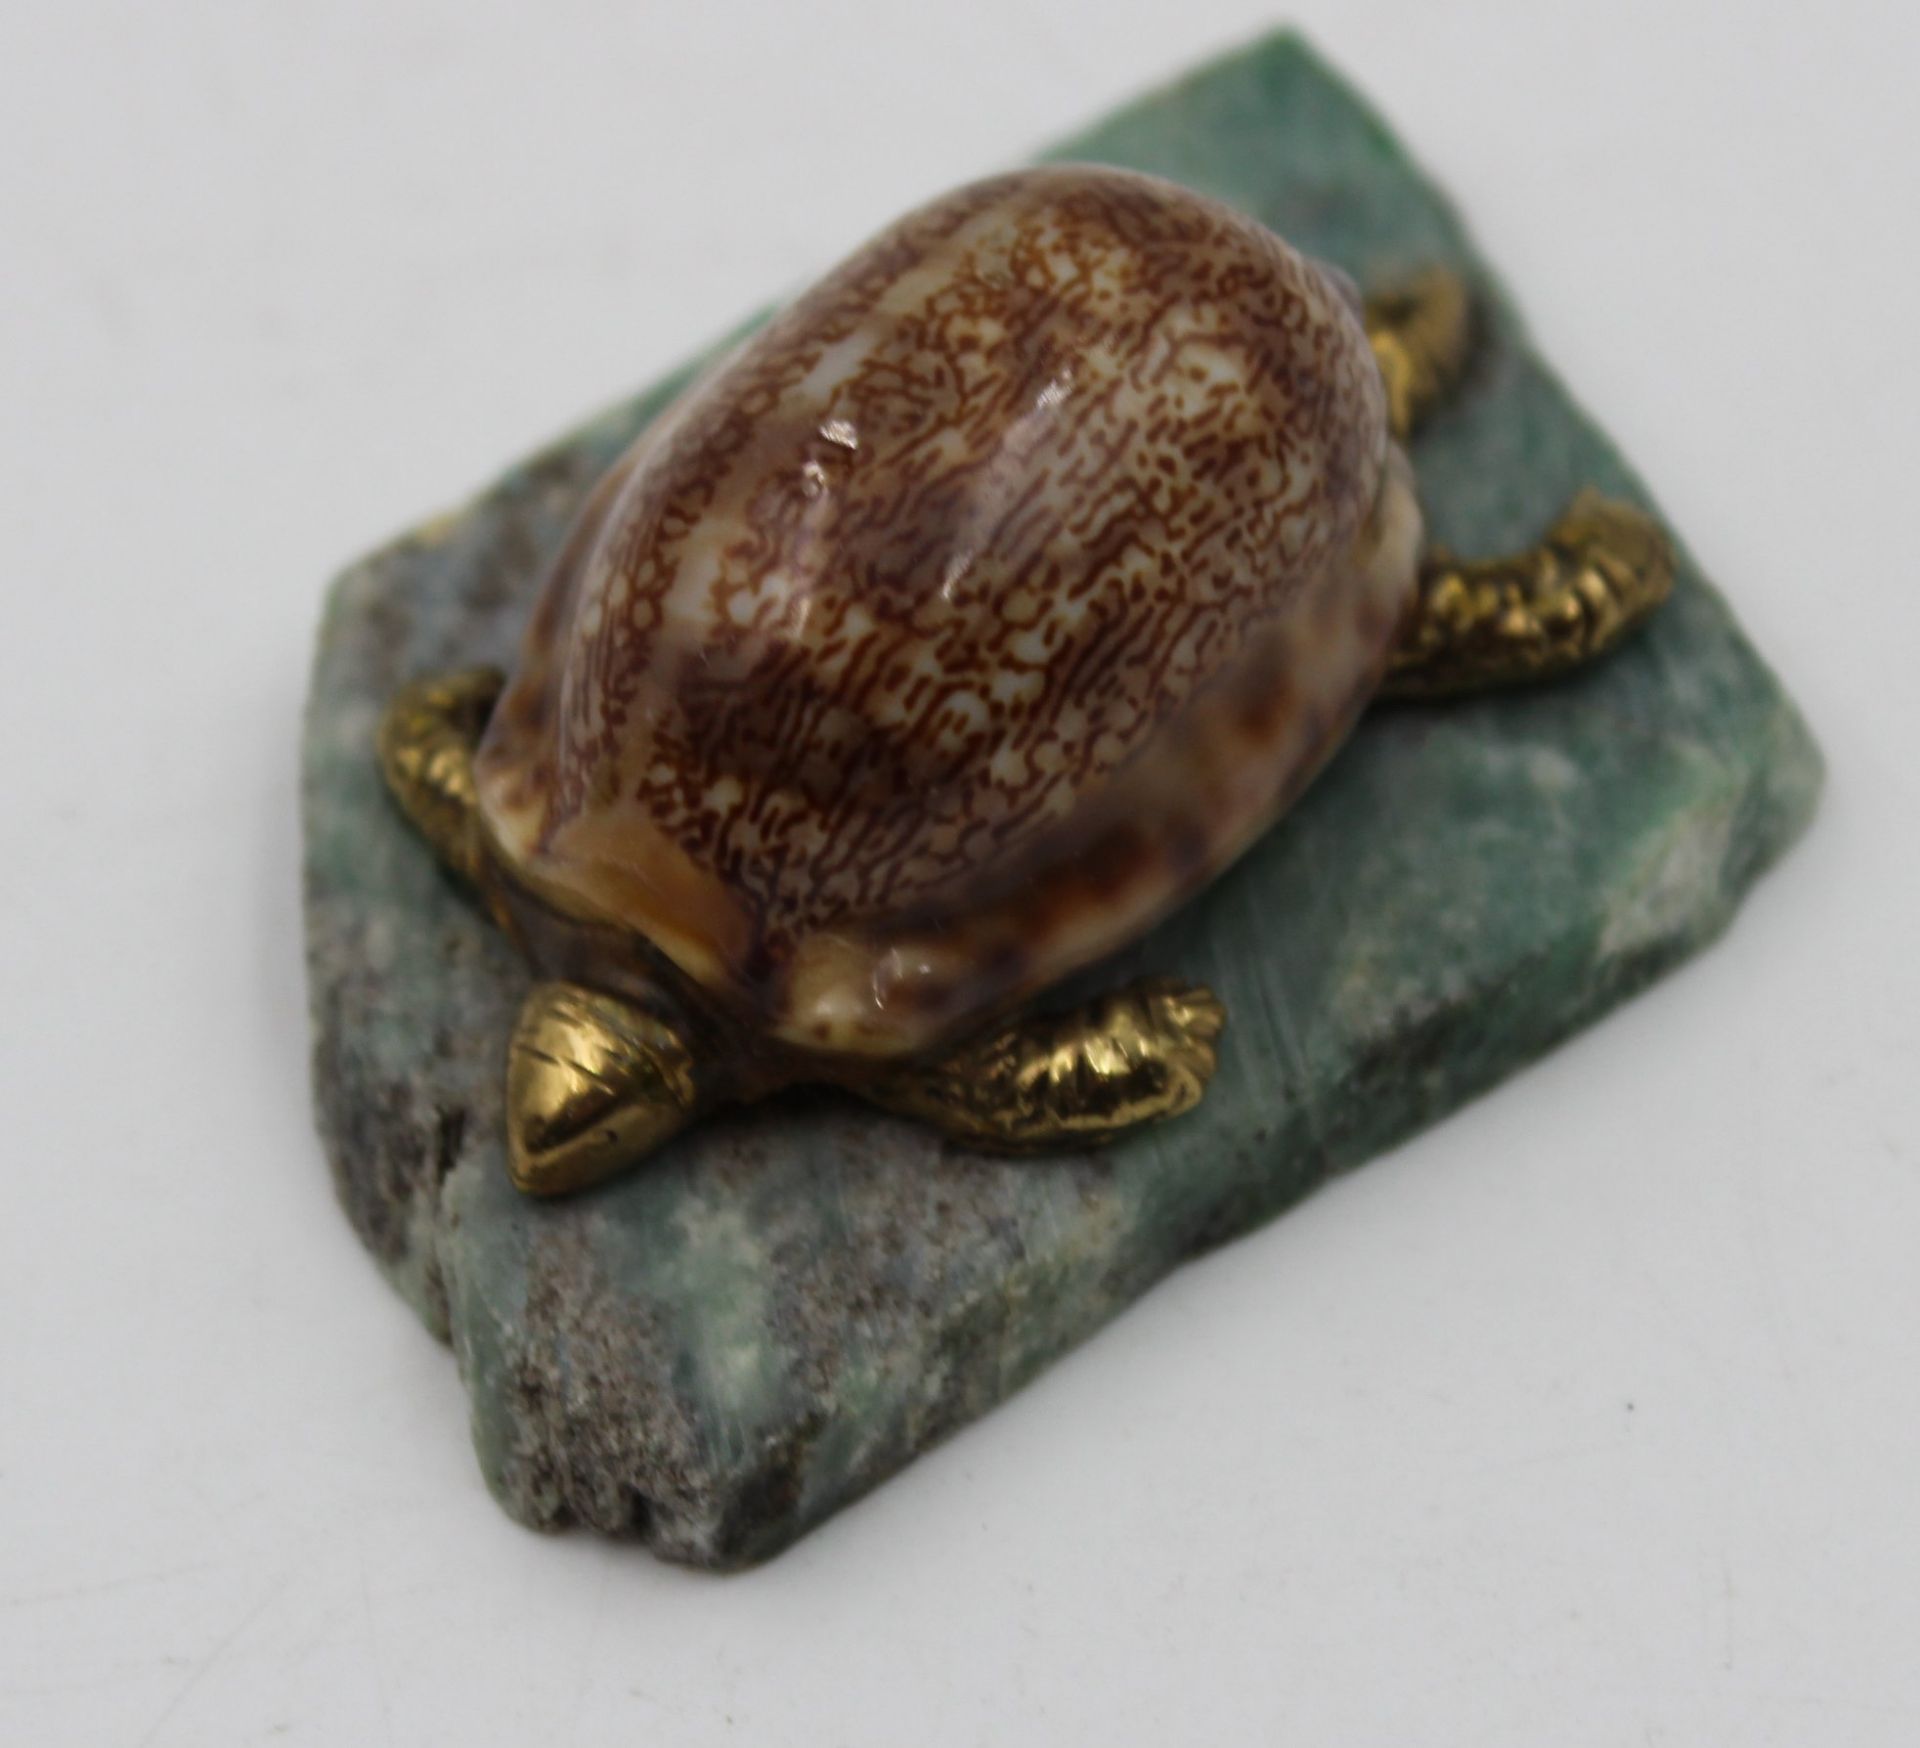 Briefbeschwerer, Schildkröte, gefertigt aus Muschel auf  Steinplatte, H-3cm L-6cm.